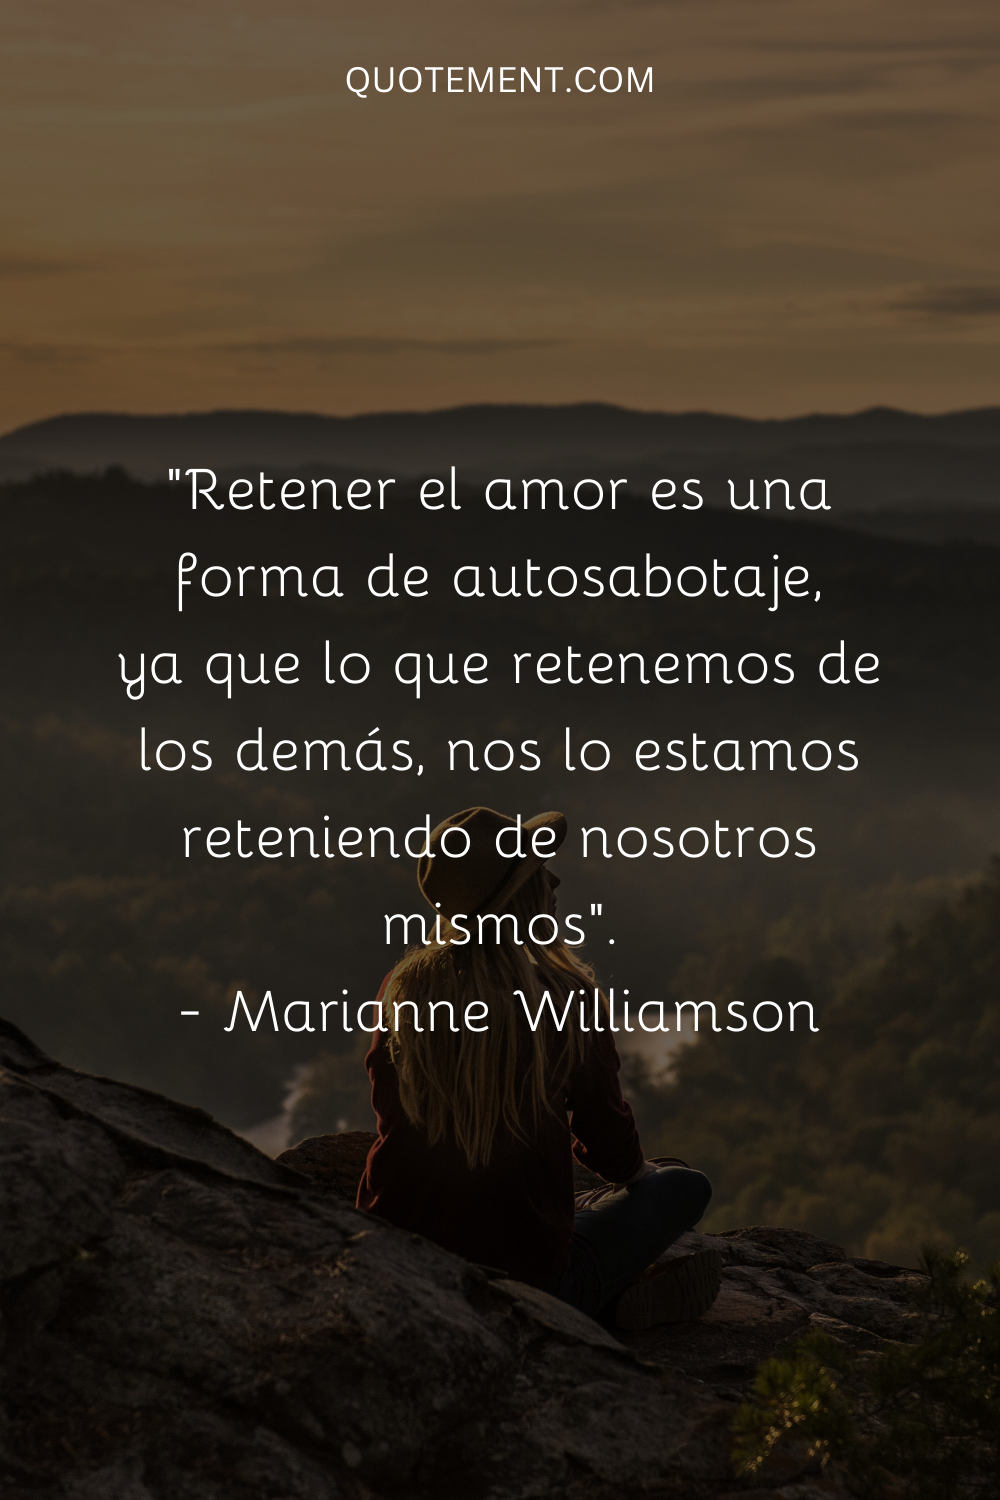 "Retener el amor es una forma de autosabotaje, ya que lo que retenemos de los demás, nos lo estamos reteniendo de nosotros mismos". - Marianne Williamson